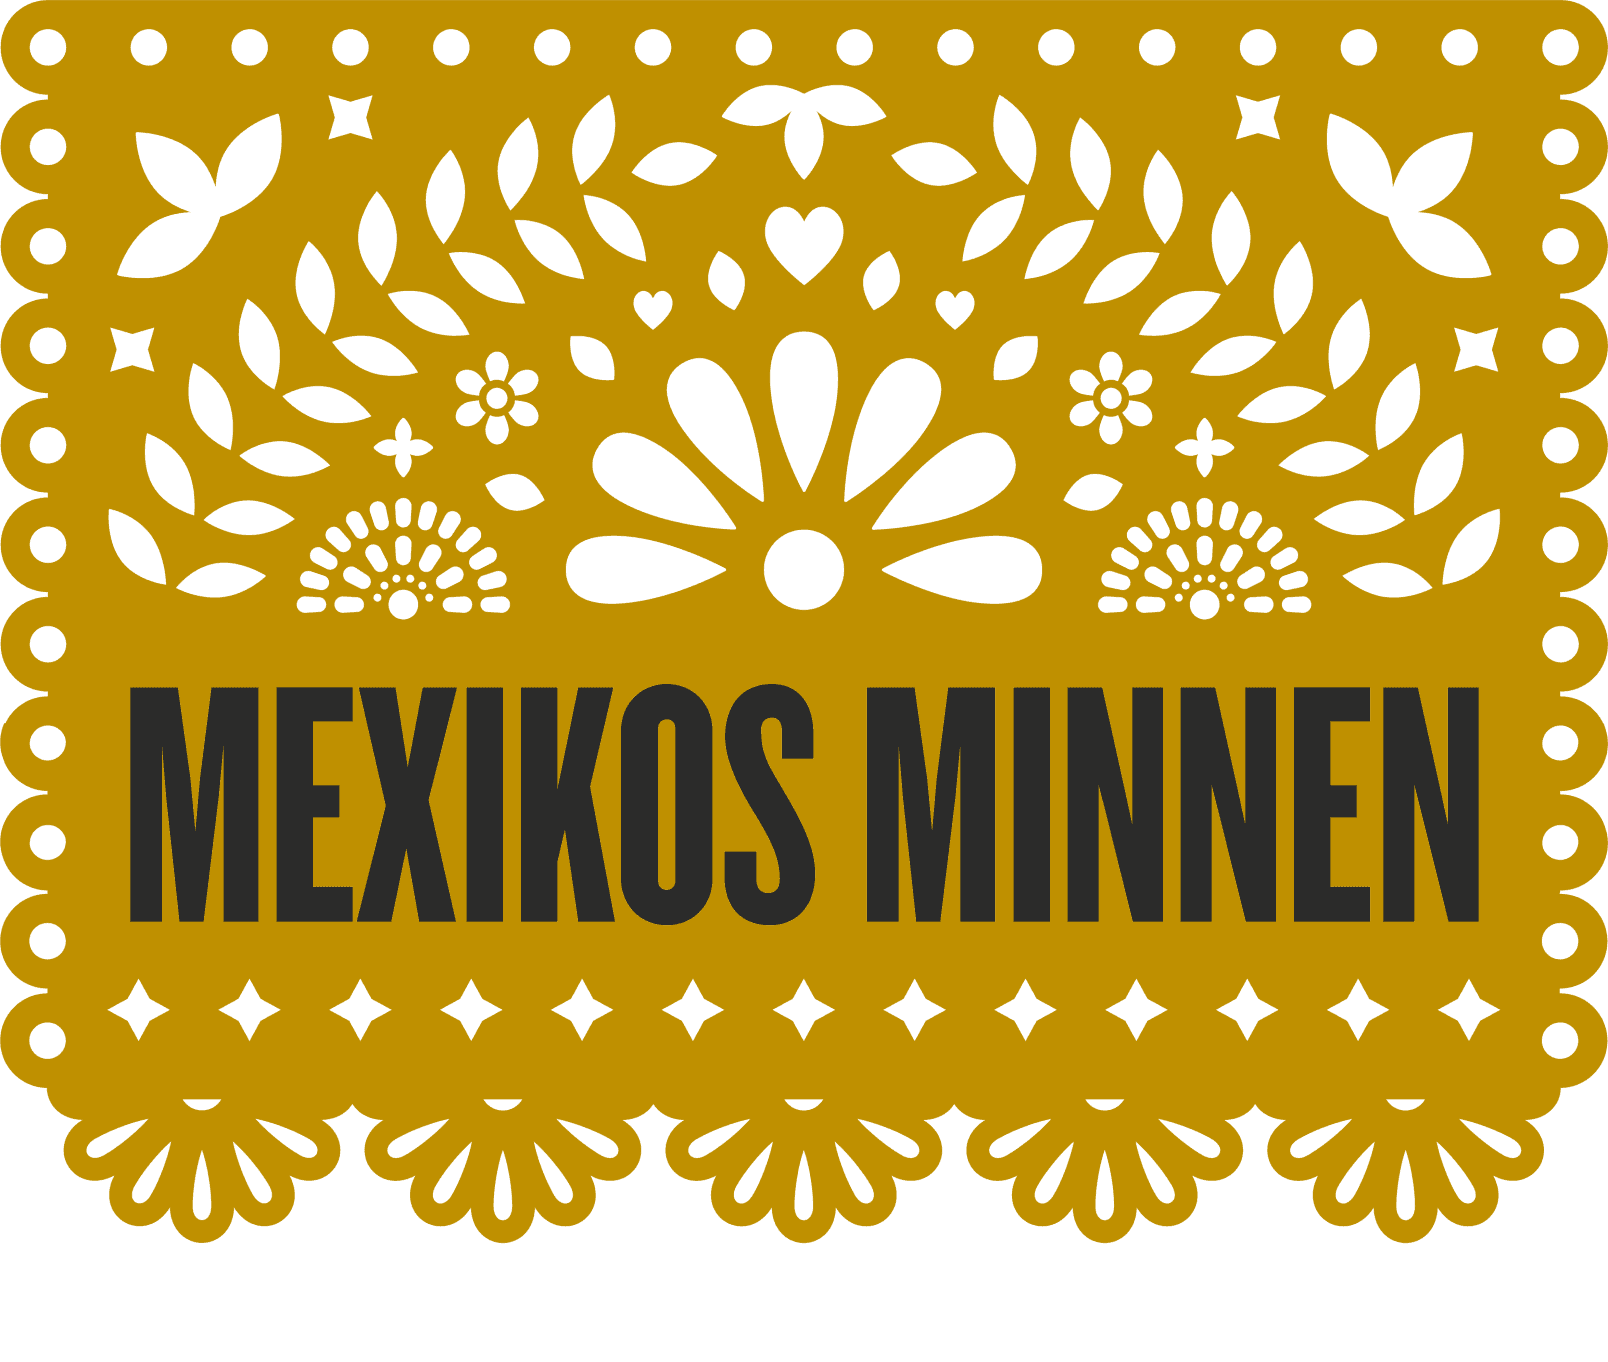 Senapsfärgat mönster och en text i svart som säger Mexikos minne